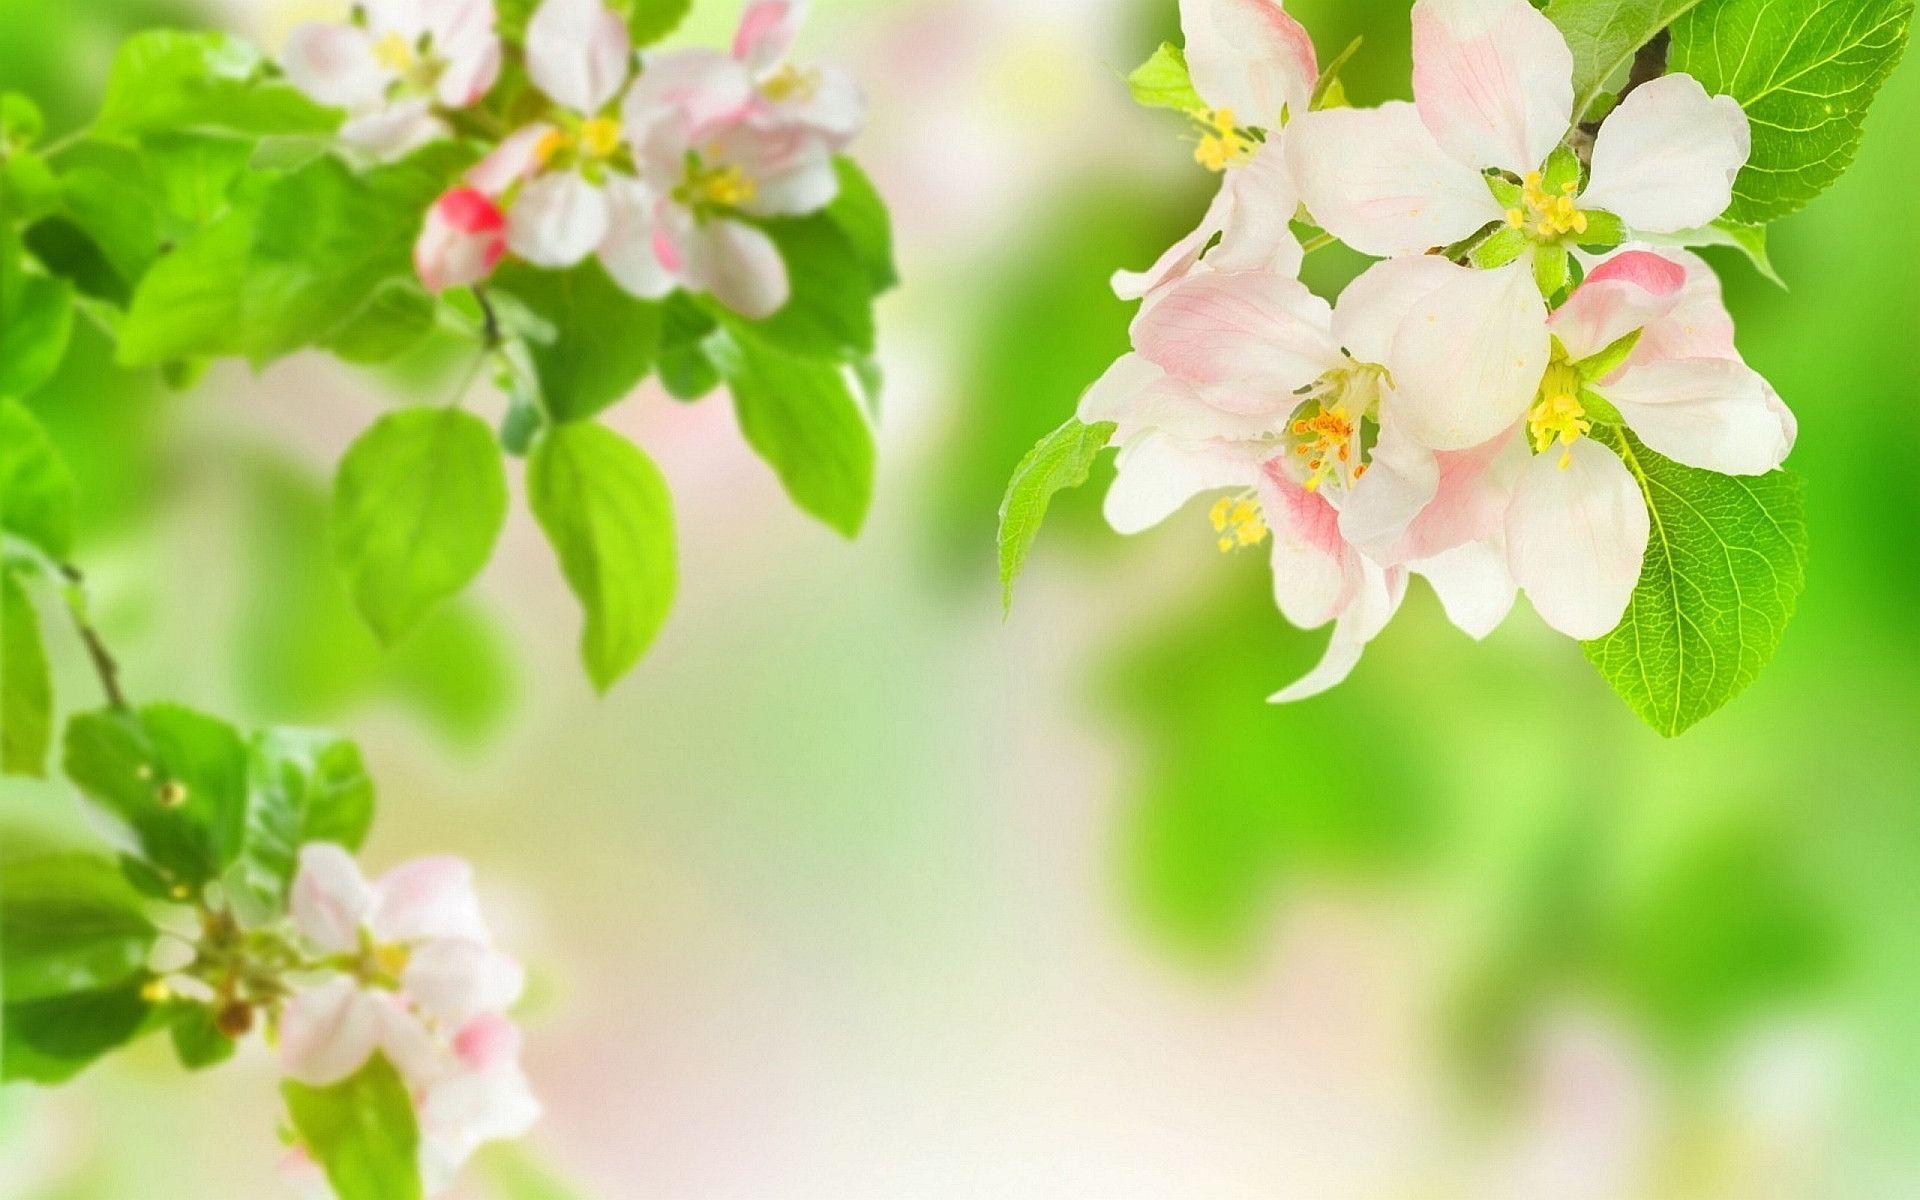 نگاره ای دیدنی از درخت سرسبز سیب و شکوفه های بهاری اش